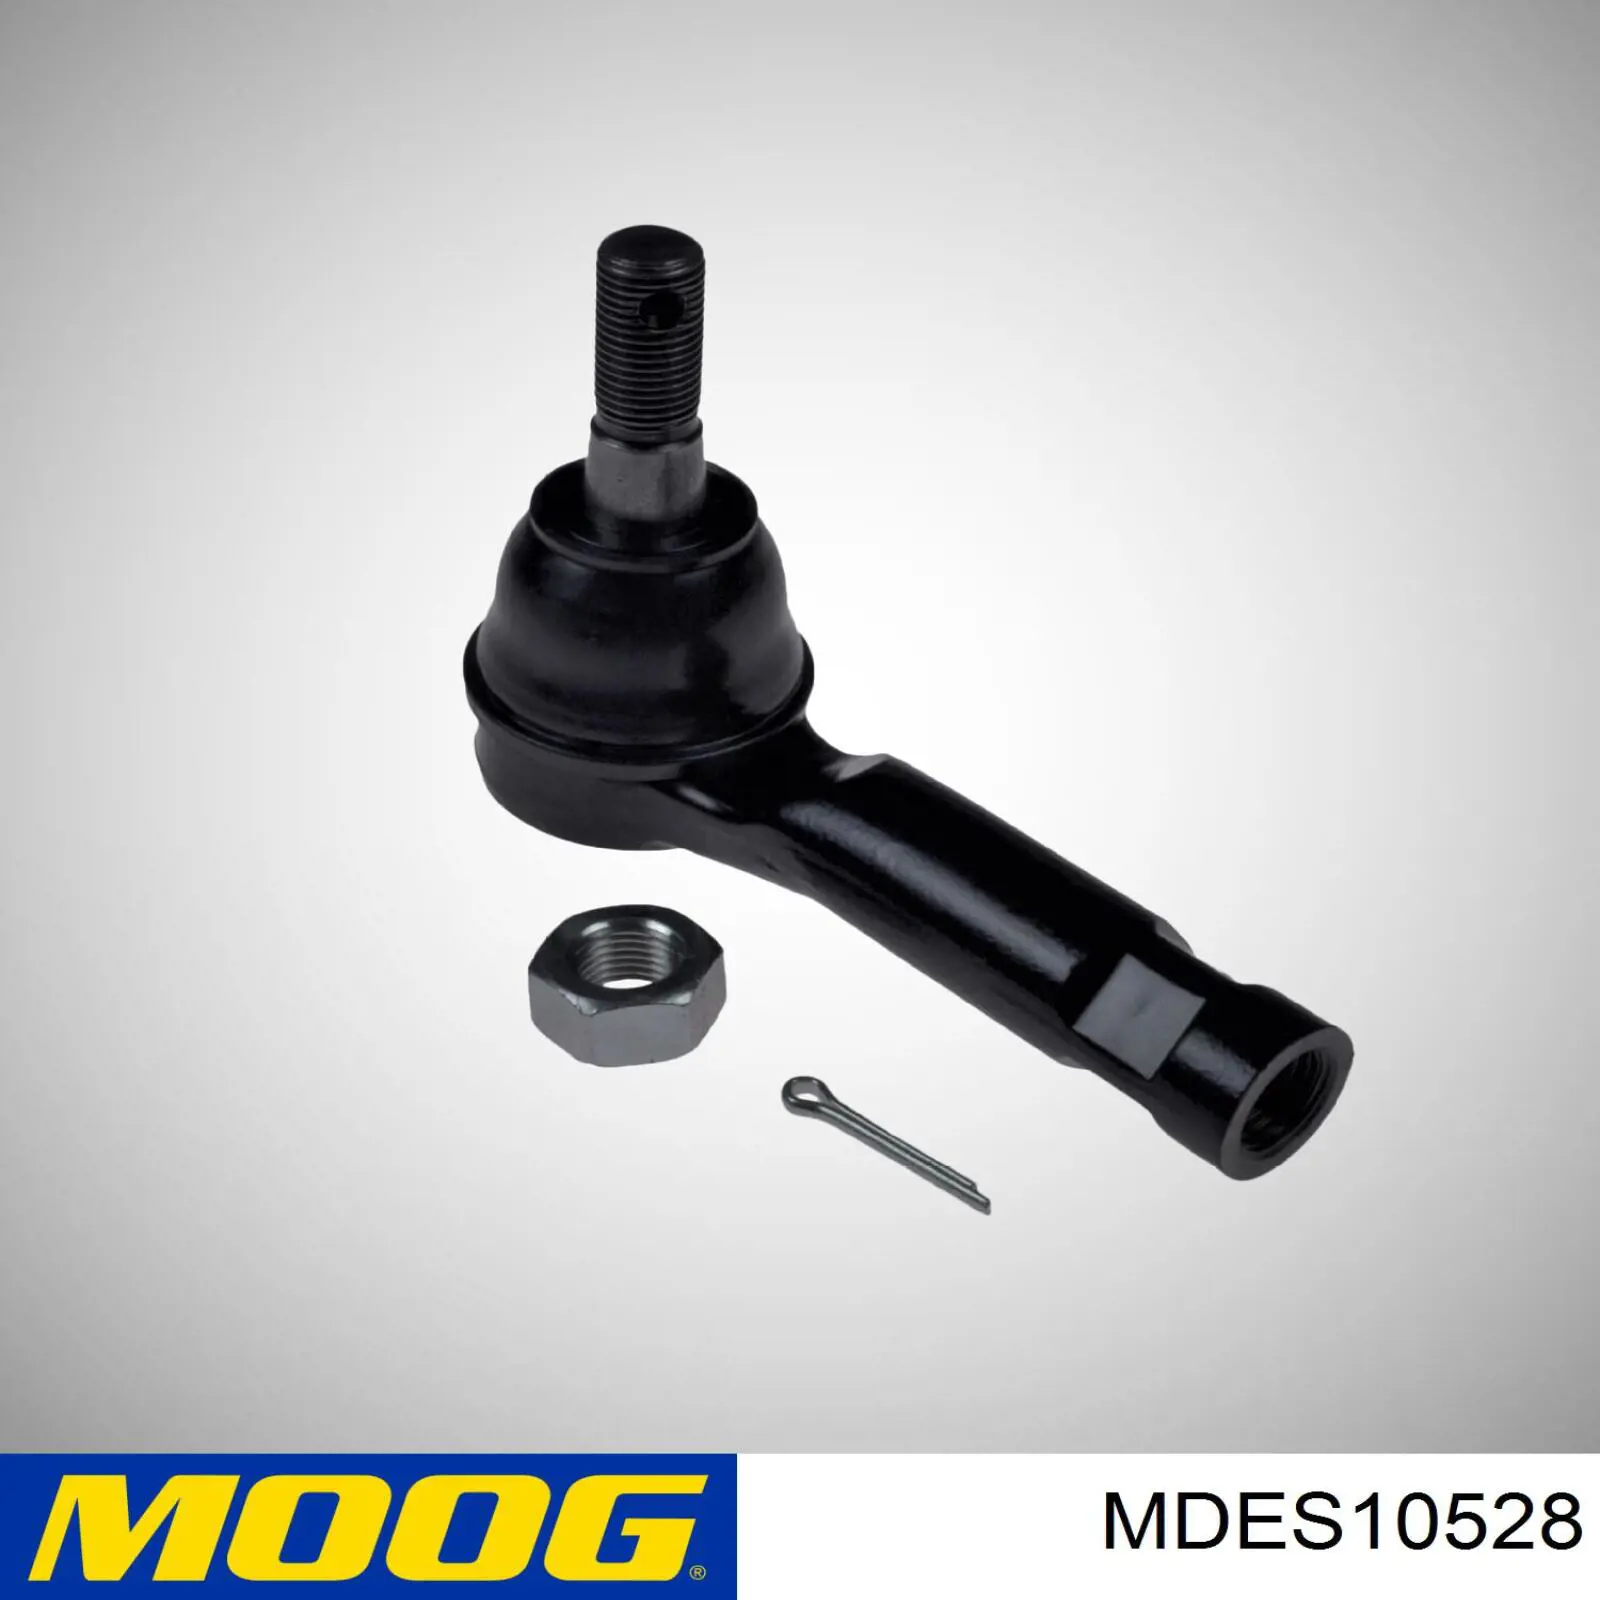 MDES10528 Moog rótula barra de acoplamiento exterior